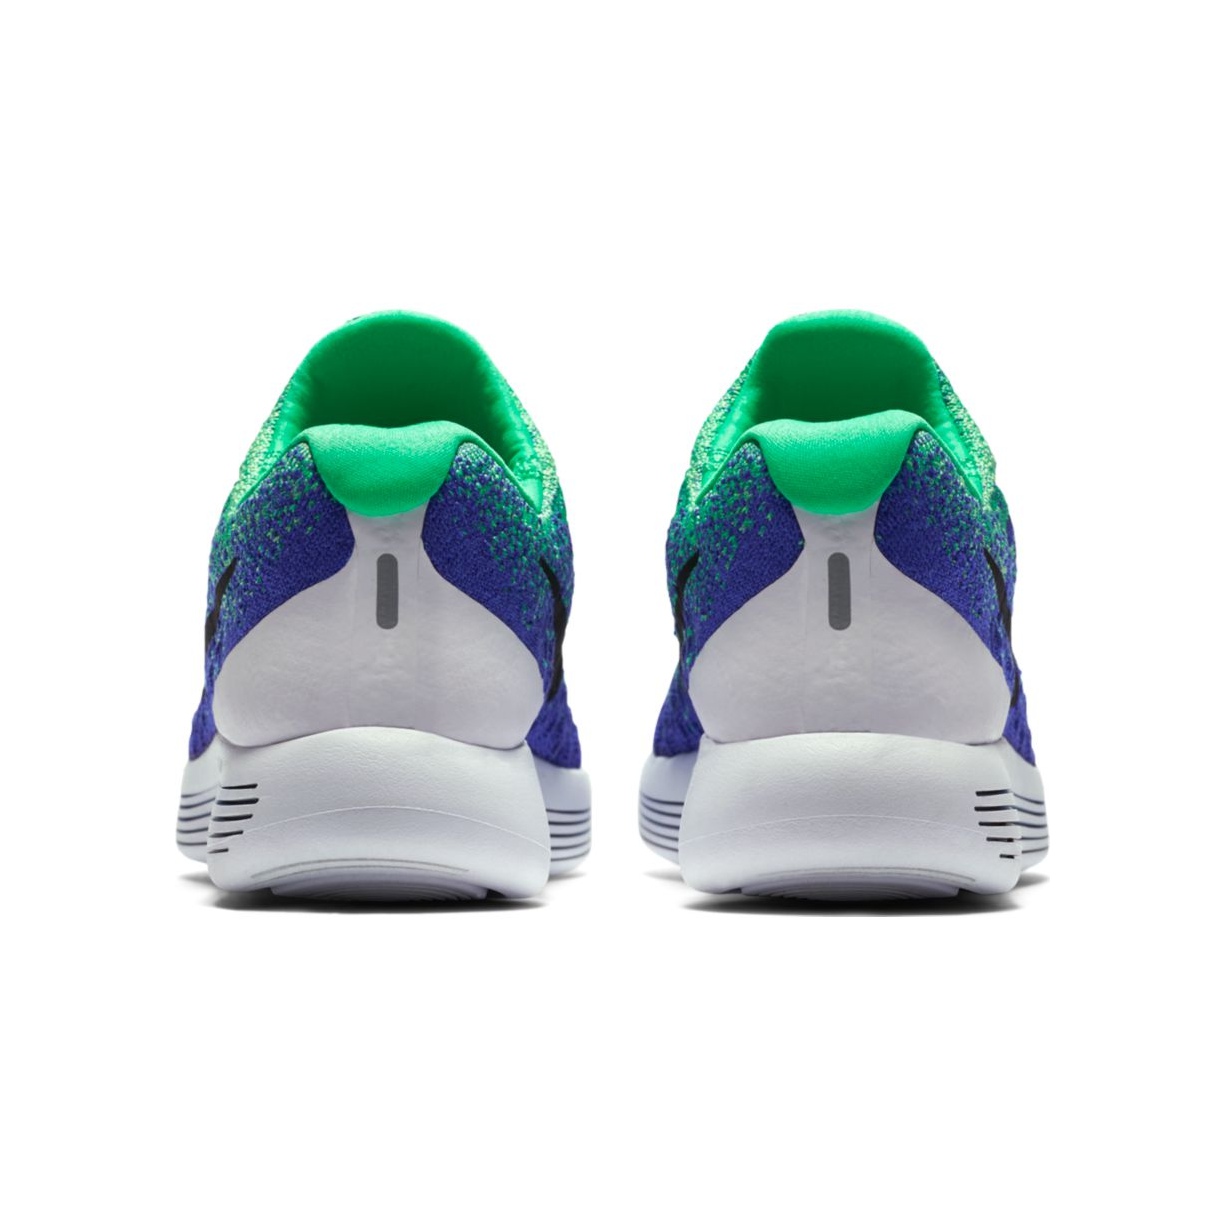 Nike LunarEpic Low Flyknit 2 "Berilo" (301/electro green/bl